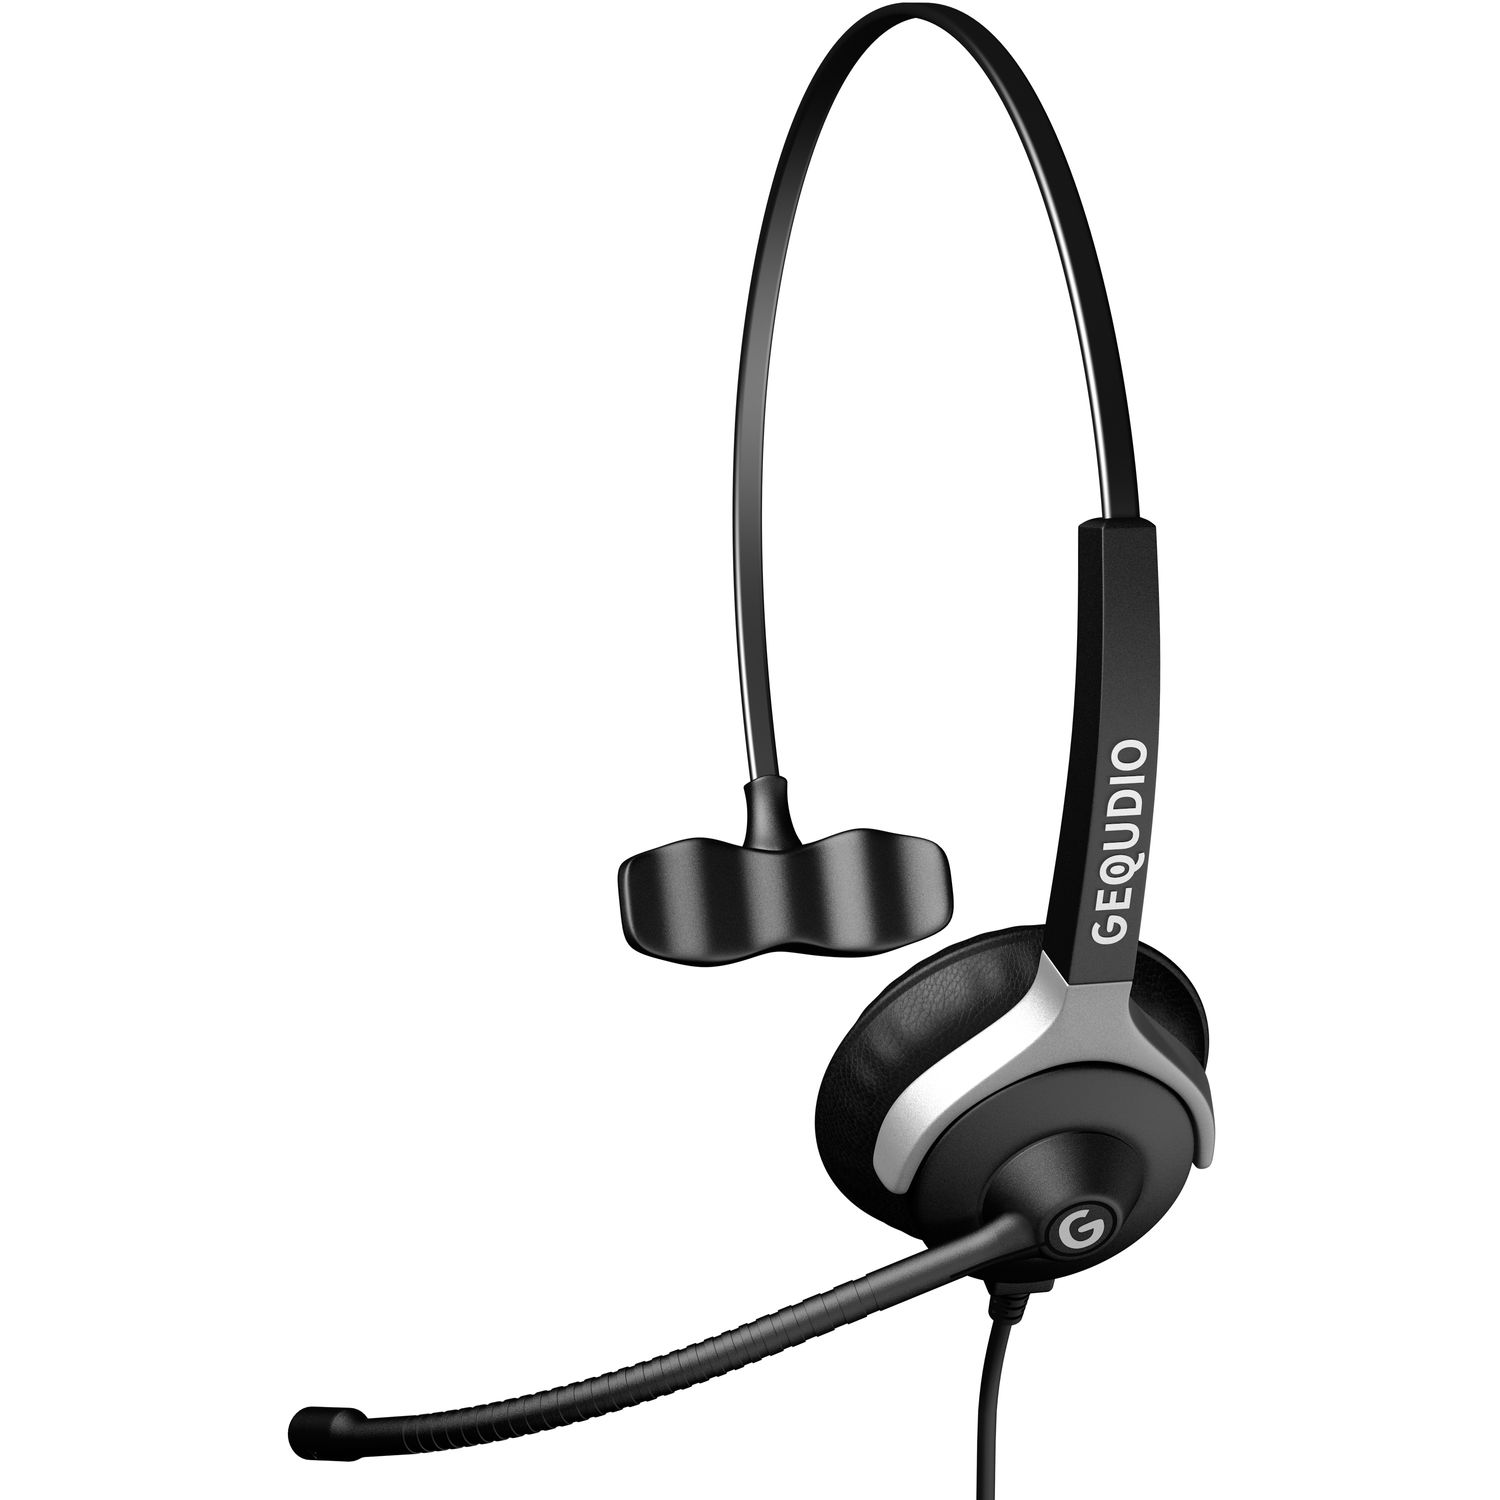 GEQUDIO Headset 1-Ohr mit für Schwarz Headset USB MAC, PC On-ear